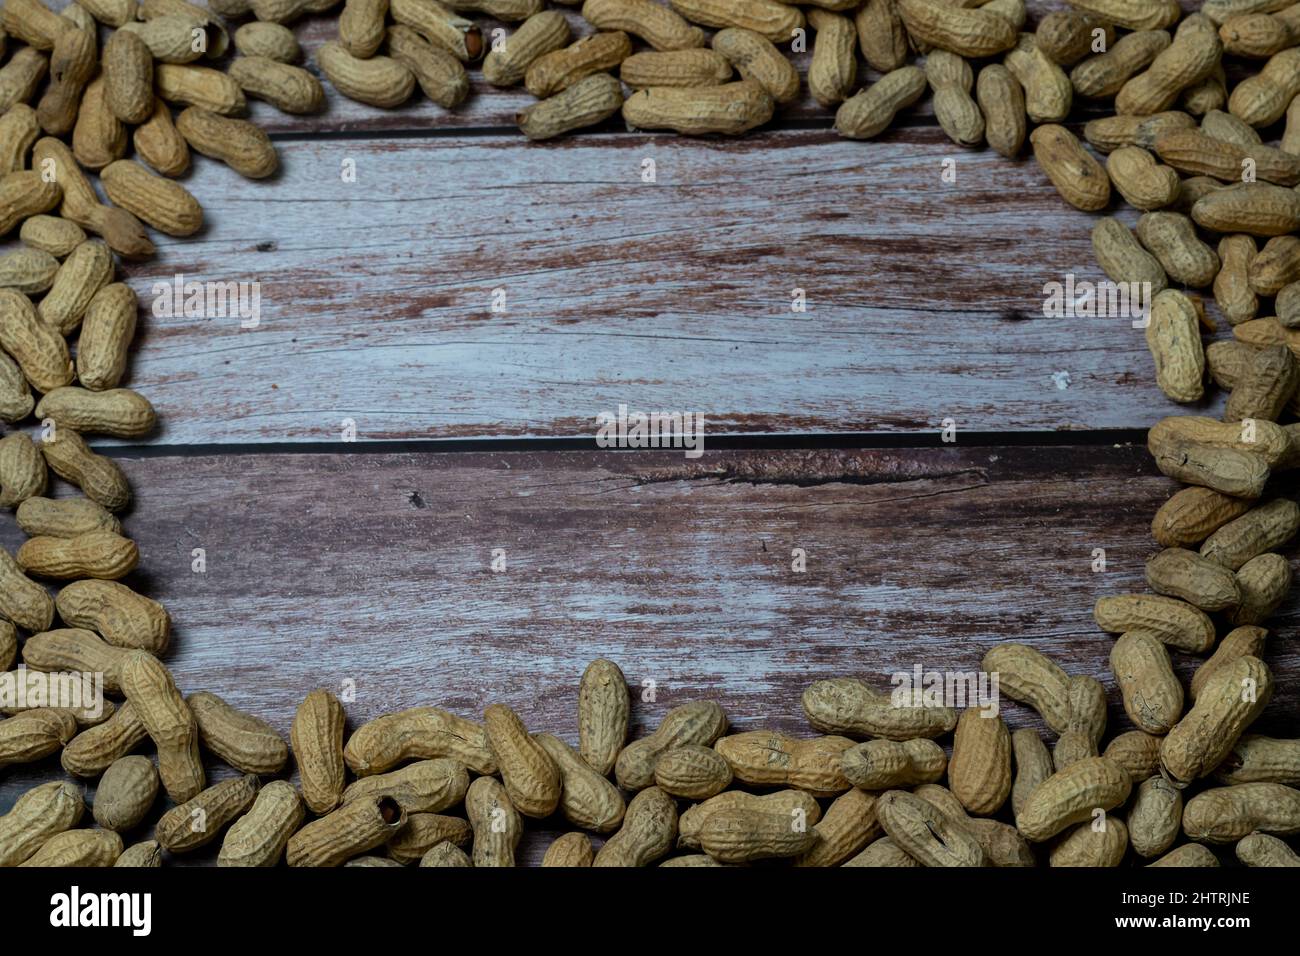 gruppo di arachidi disposte in cerchio Foto Stock